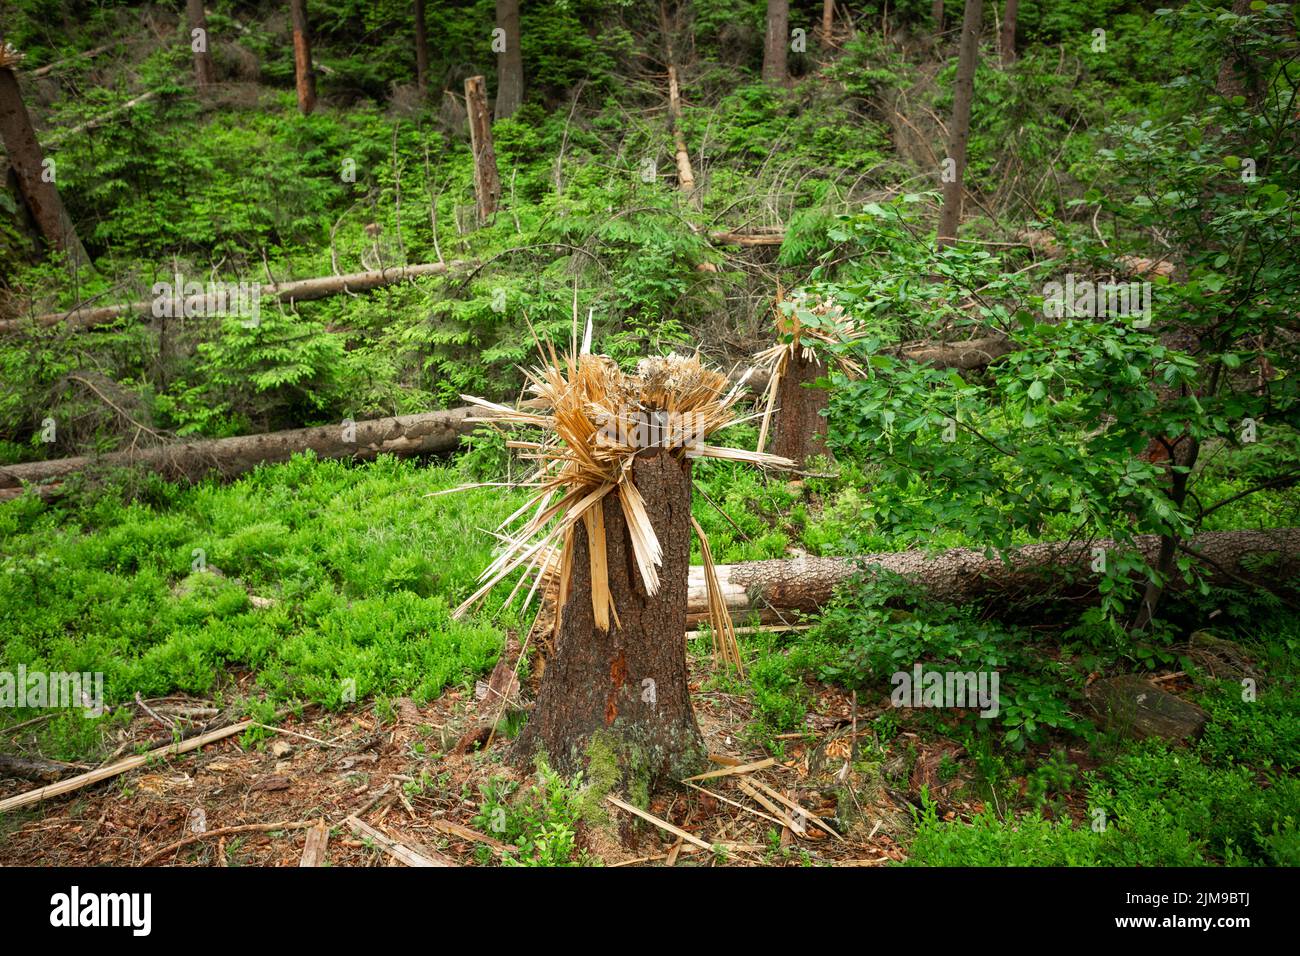 Bäume, die im Nationalpark Böhmische Schweiz, Tschechien, von der Basis des Stamms gebrochen wurden Stockfoto